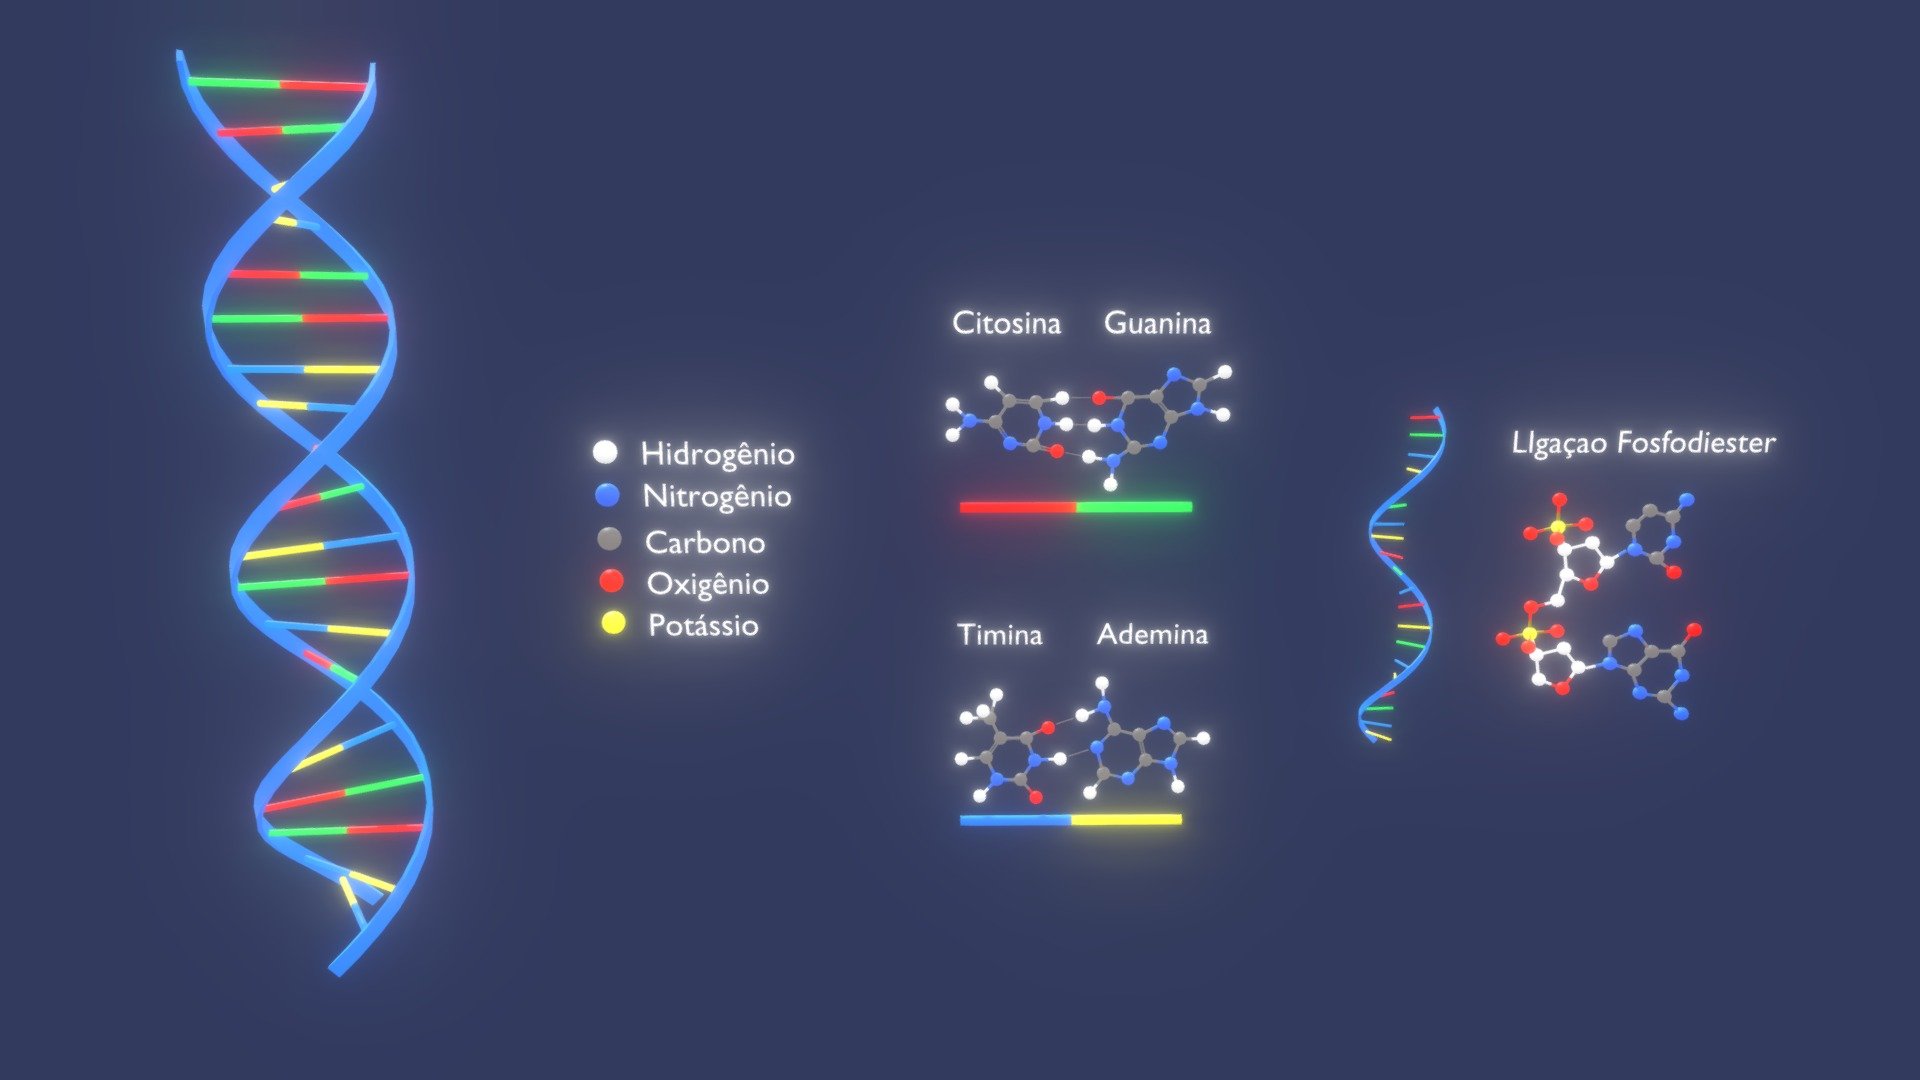 Objetivo: Aprimorar a visualização da molécula, enfatizando sua organização, seus componentes e como se comportam de maneira integradora.

Softare utilizado: Blender
Autor do modelo 3d: Matheus Guandalini - Visão Tridimensional Da Molécula De DNA (456) - 3D model by RA Unicesumar - Recursos Digitais e Inovação (@raunicesumar) 3d model